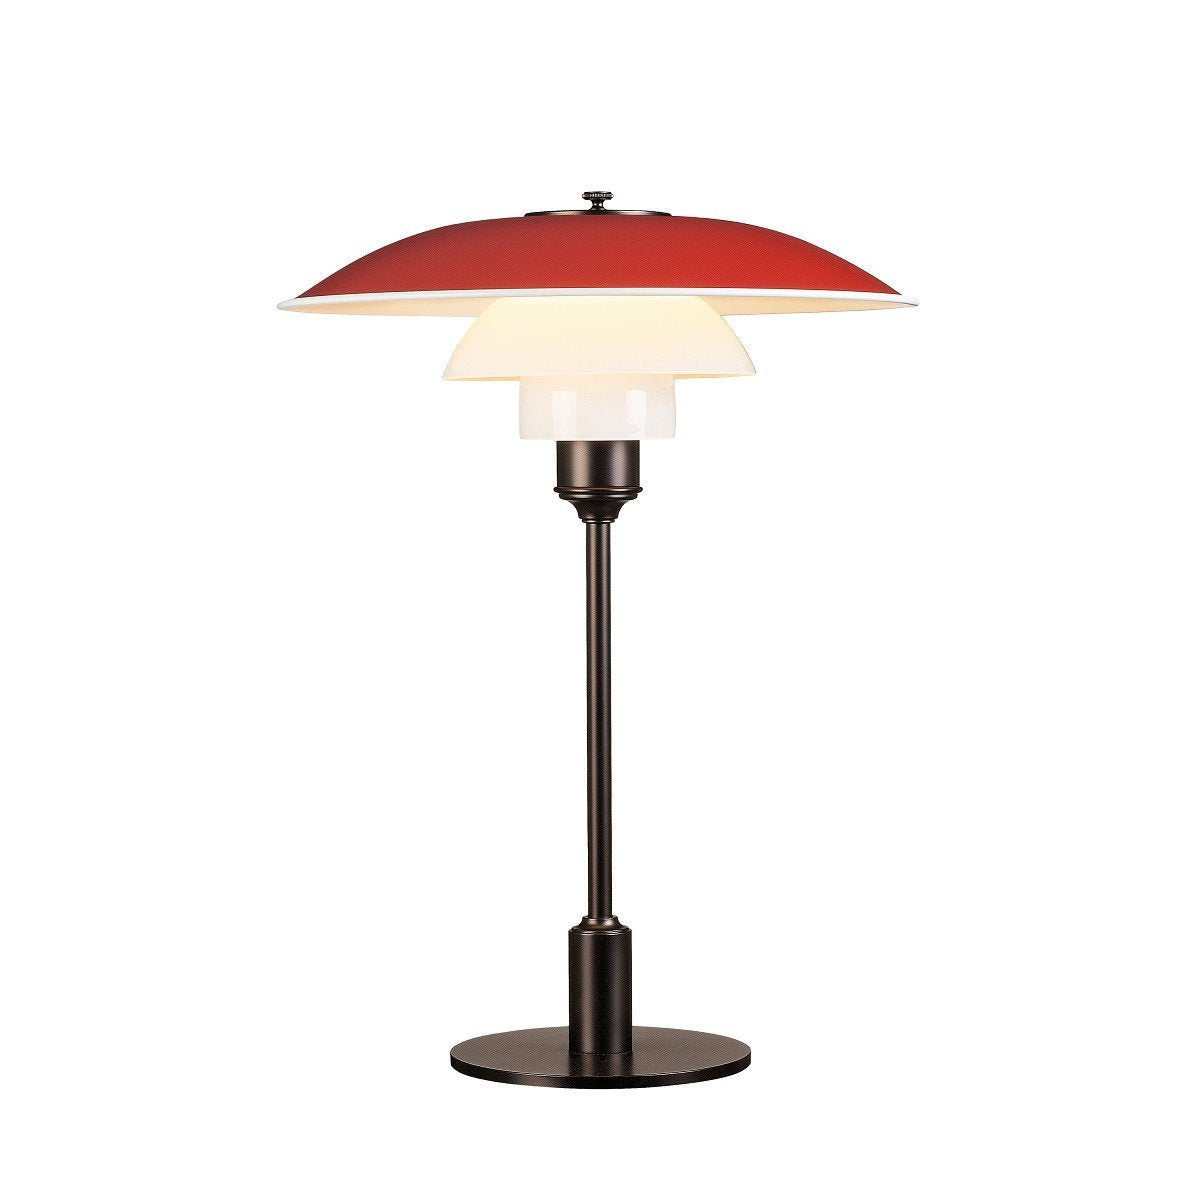 Louis Poulsen PH 3 1/2 2 1/2 lampe de table, rouge